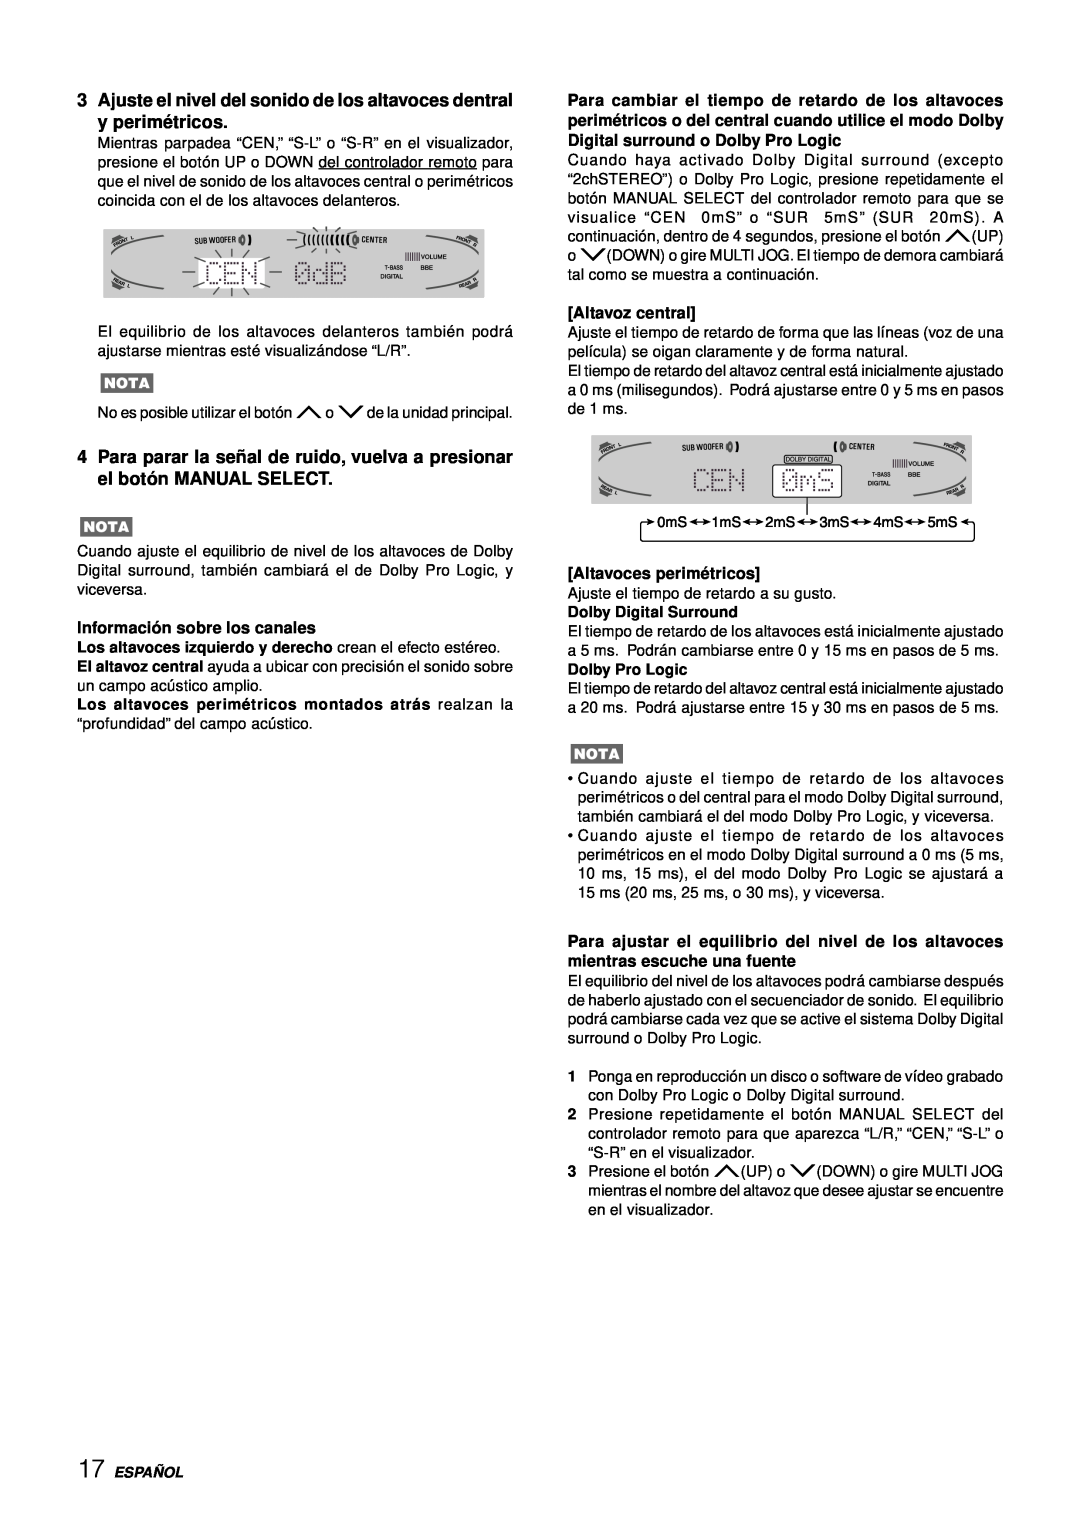 Aiwa AV-D77 manual Informació n sobre los canales, Altavoz central, Altavoces perimé tricos, Dolby Digital Surround 